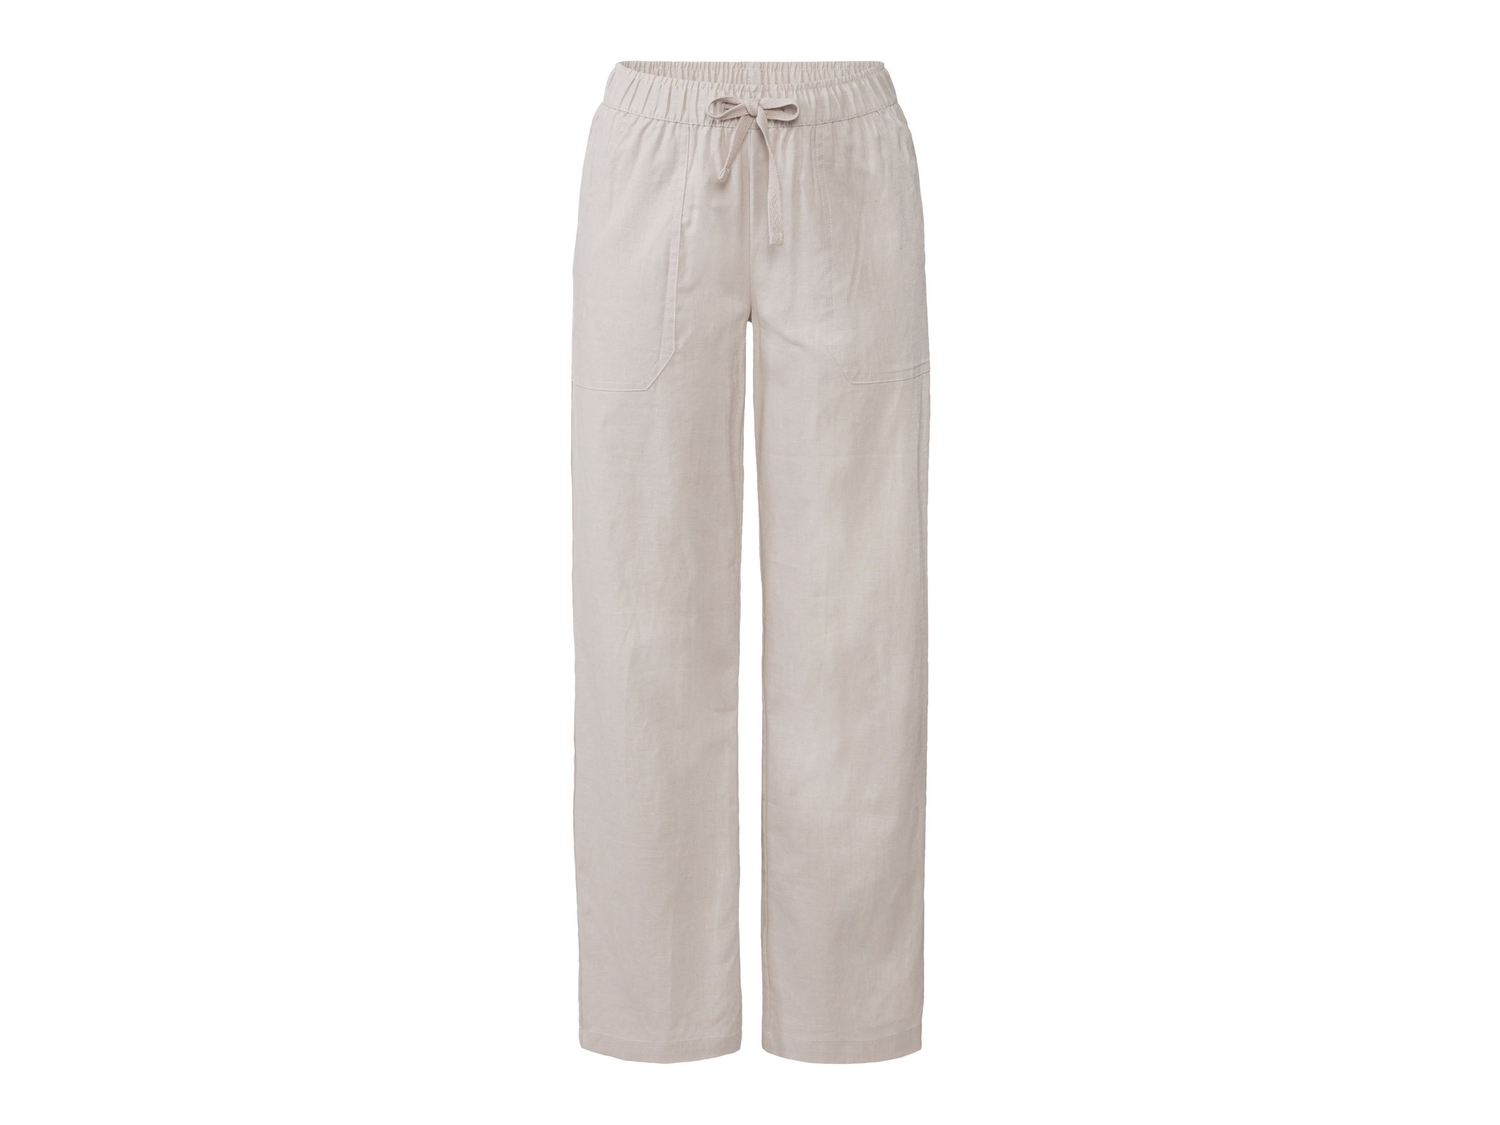 Pantaloni in canapa da donna Esmara, prezzo 14.99 &#8364; 
Misure: 38-48 
- ...